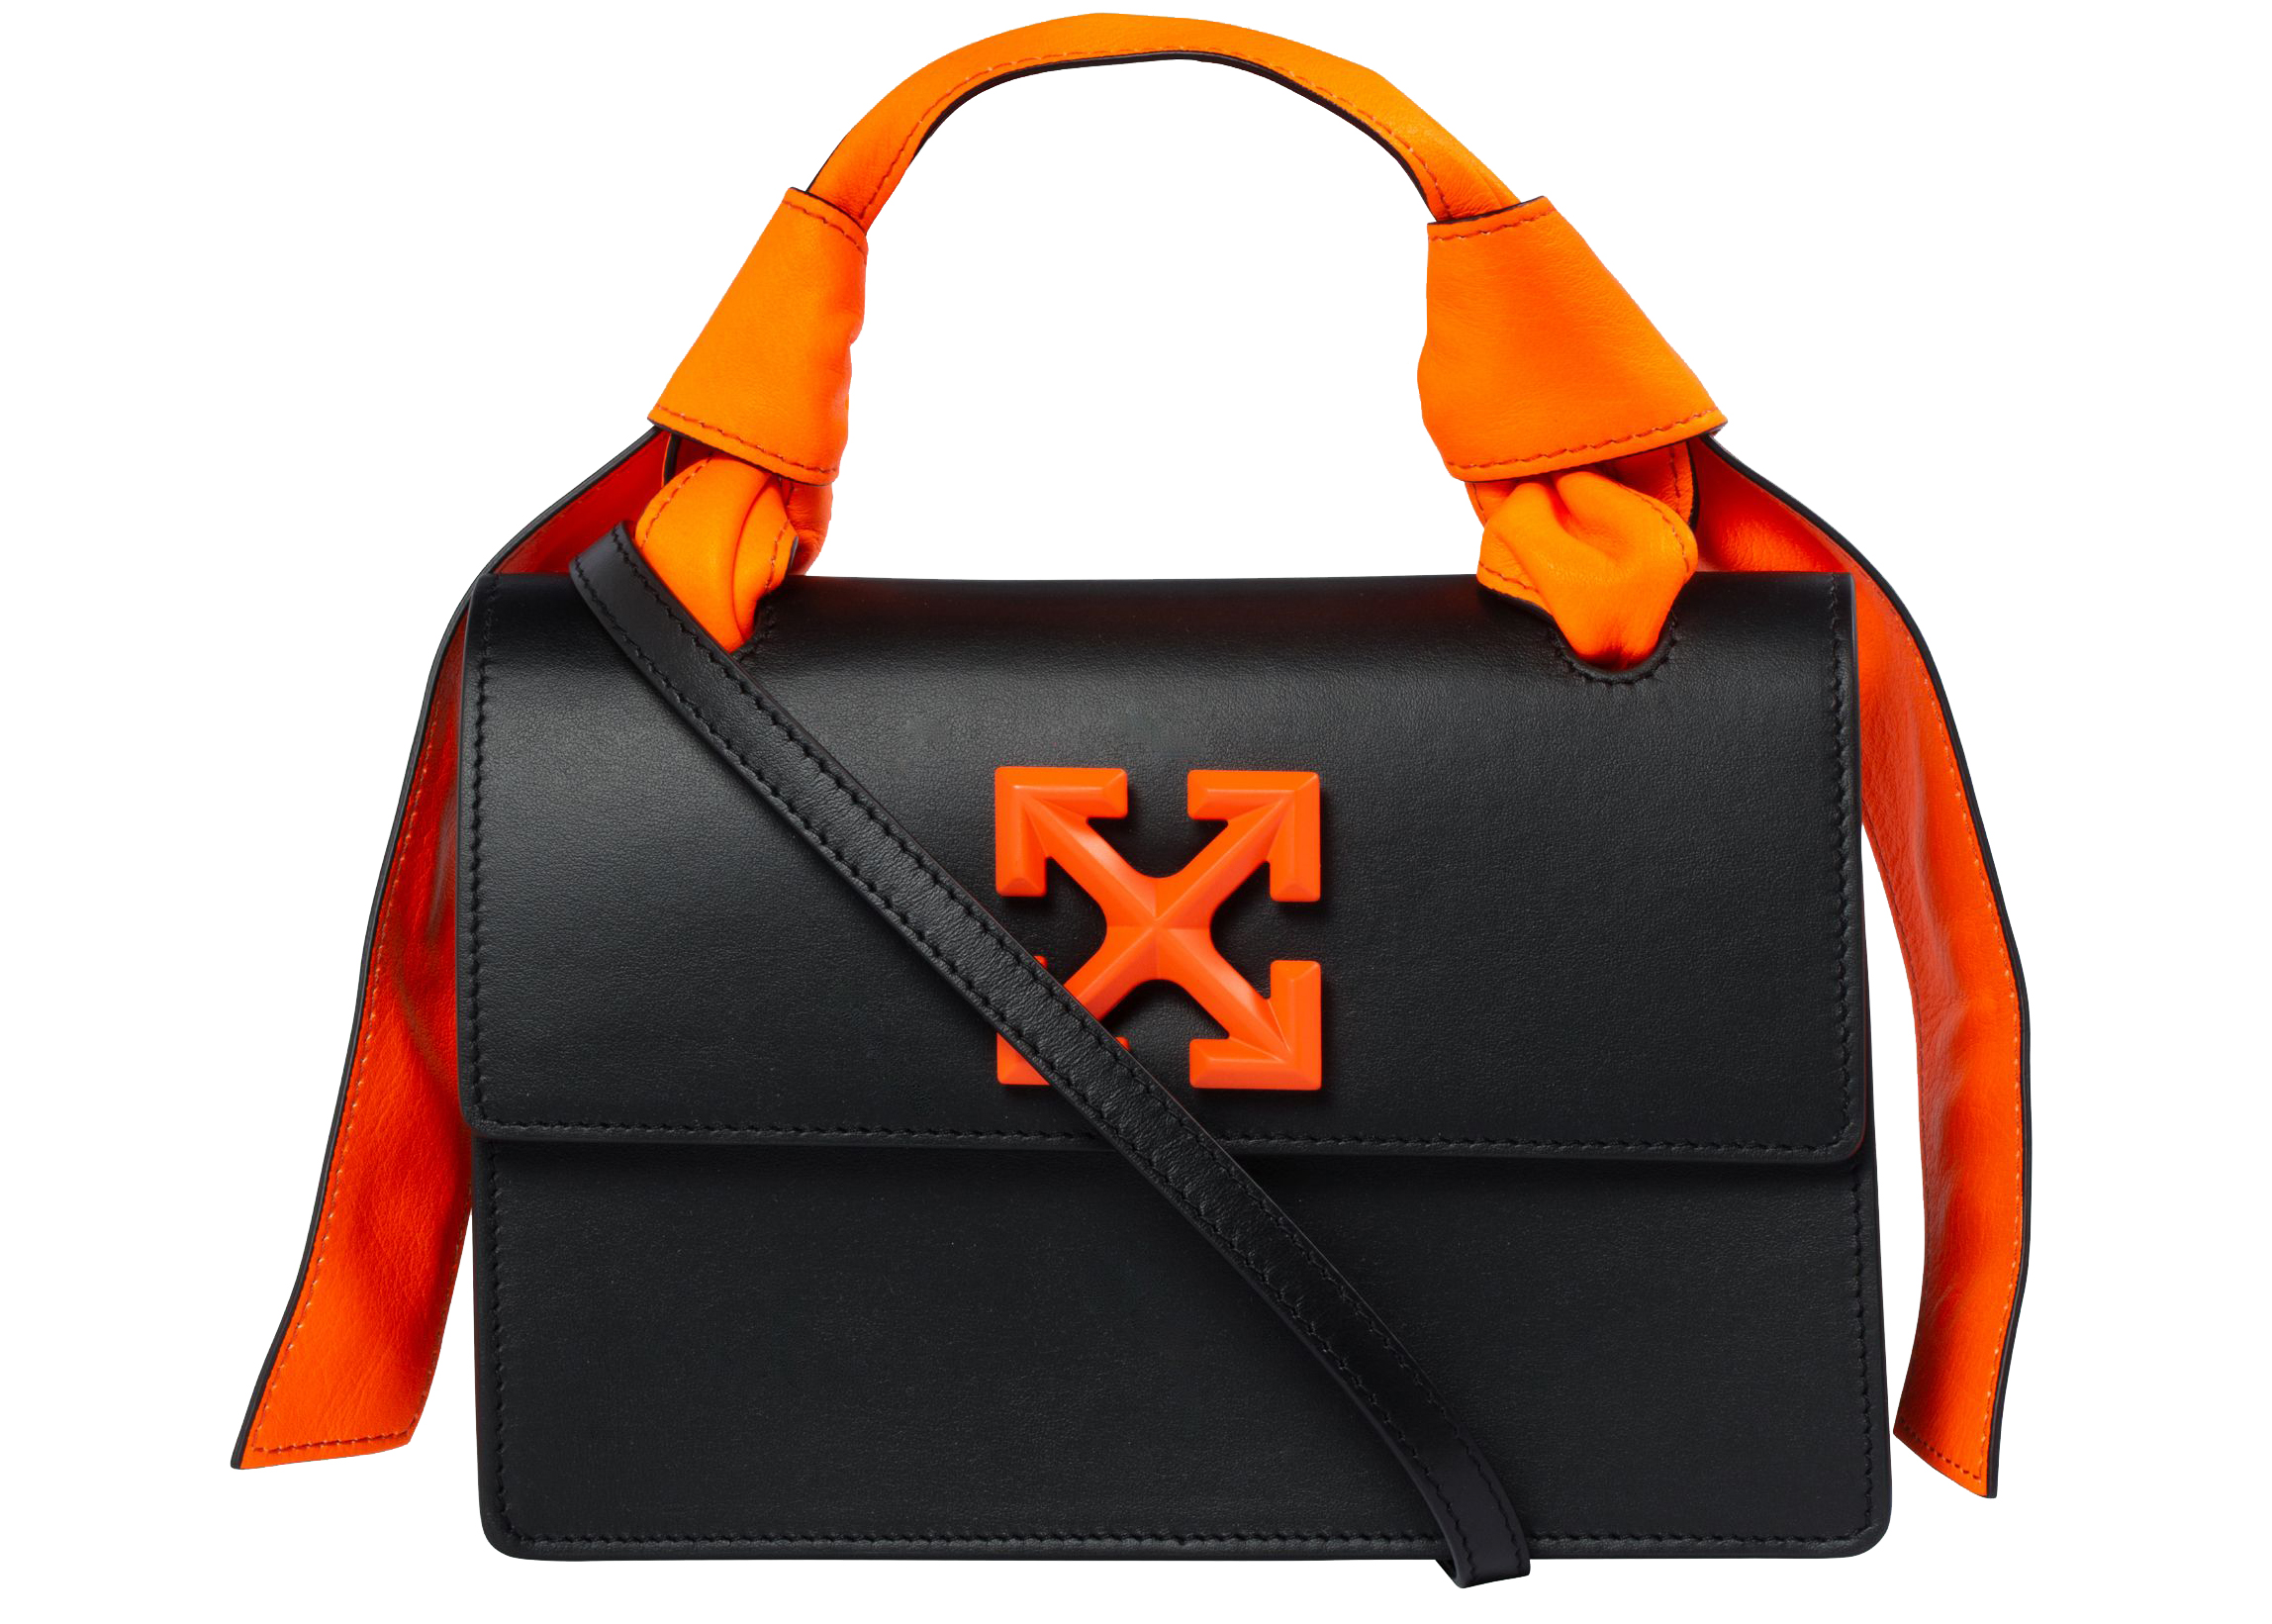 OFF-WHITE 1.4 Jitney Bag Black/Orange in Leather with Black/Orange